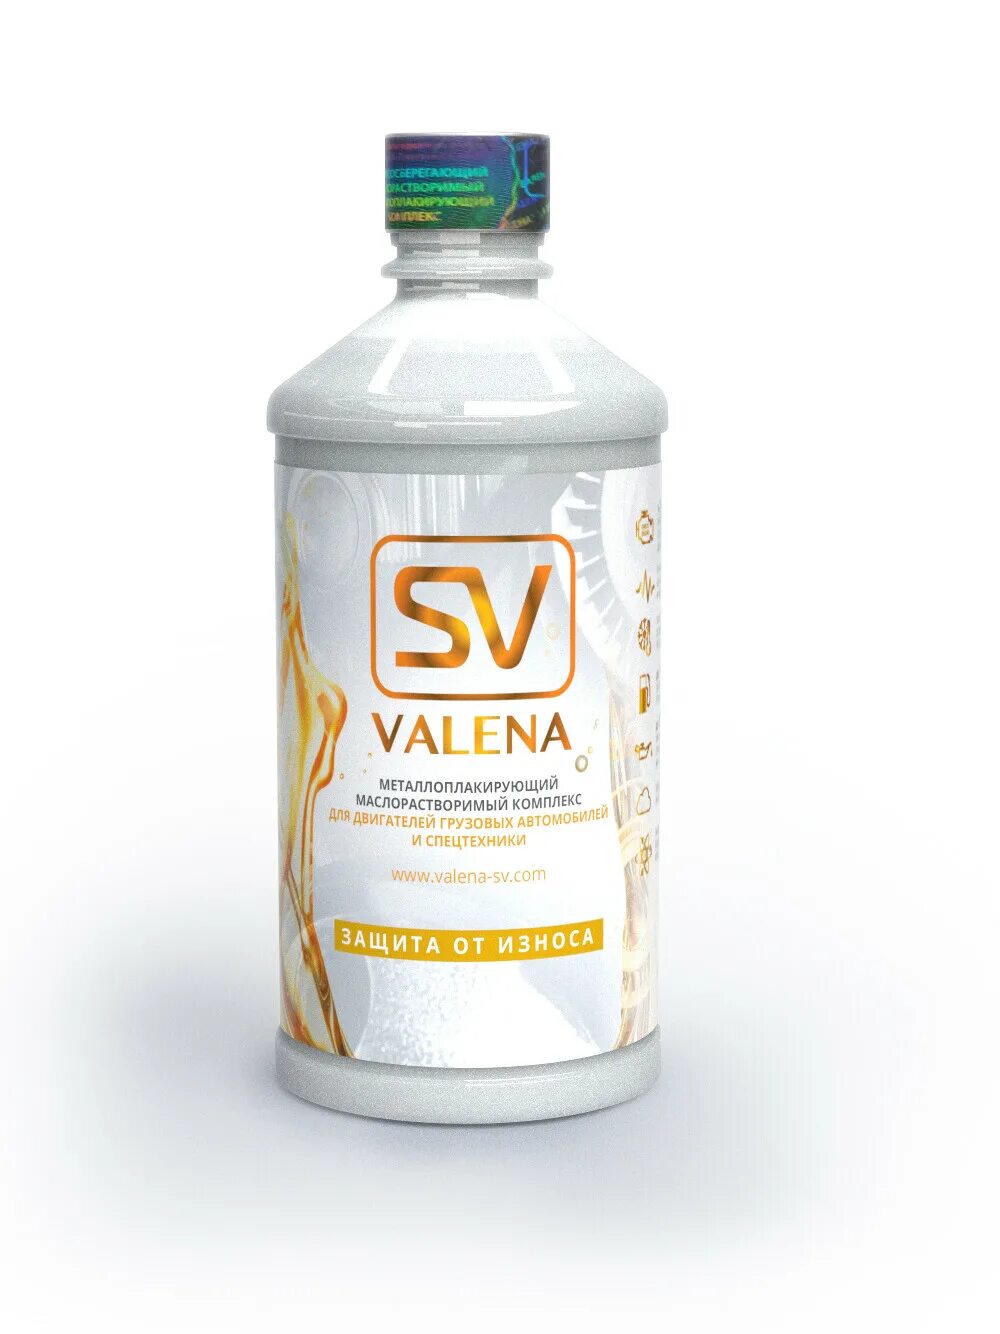 SV Valena присадка. Присадка Valena SV артикул. Valena SV масло моторное. Valena присадка в масло.